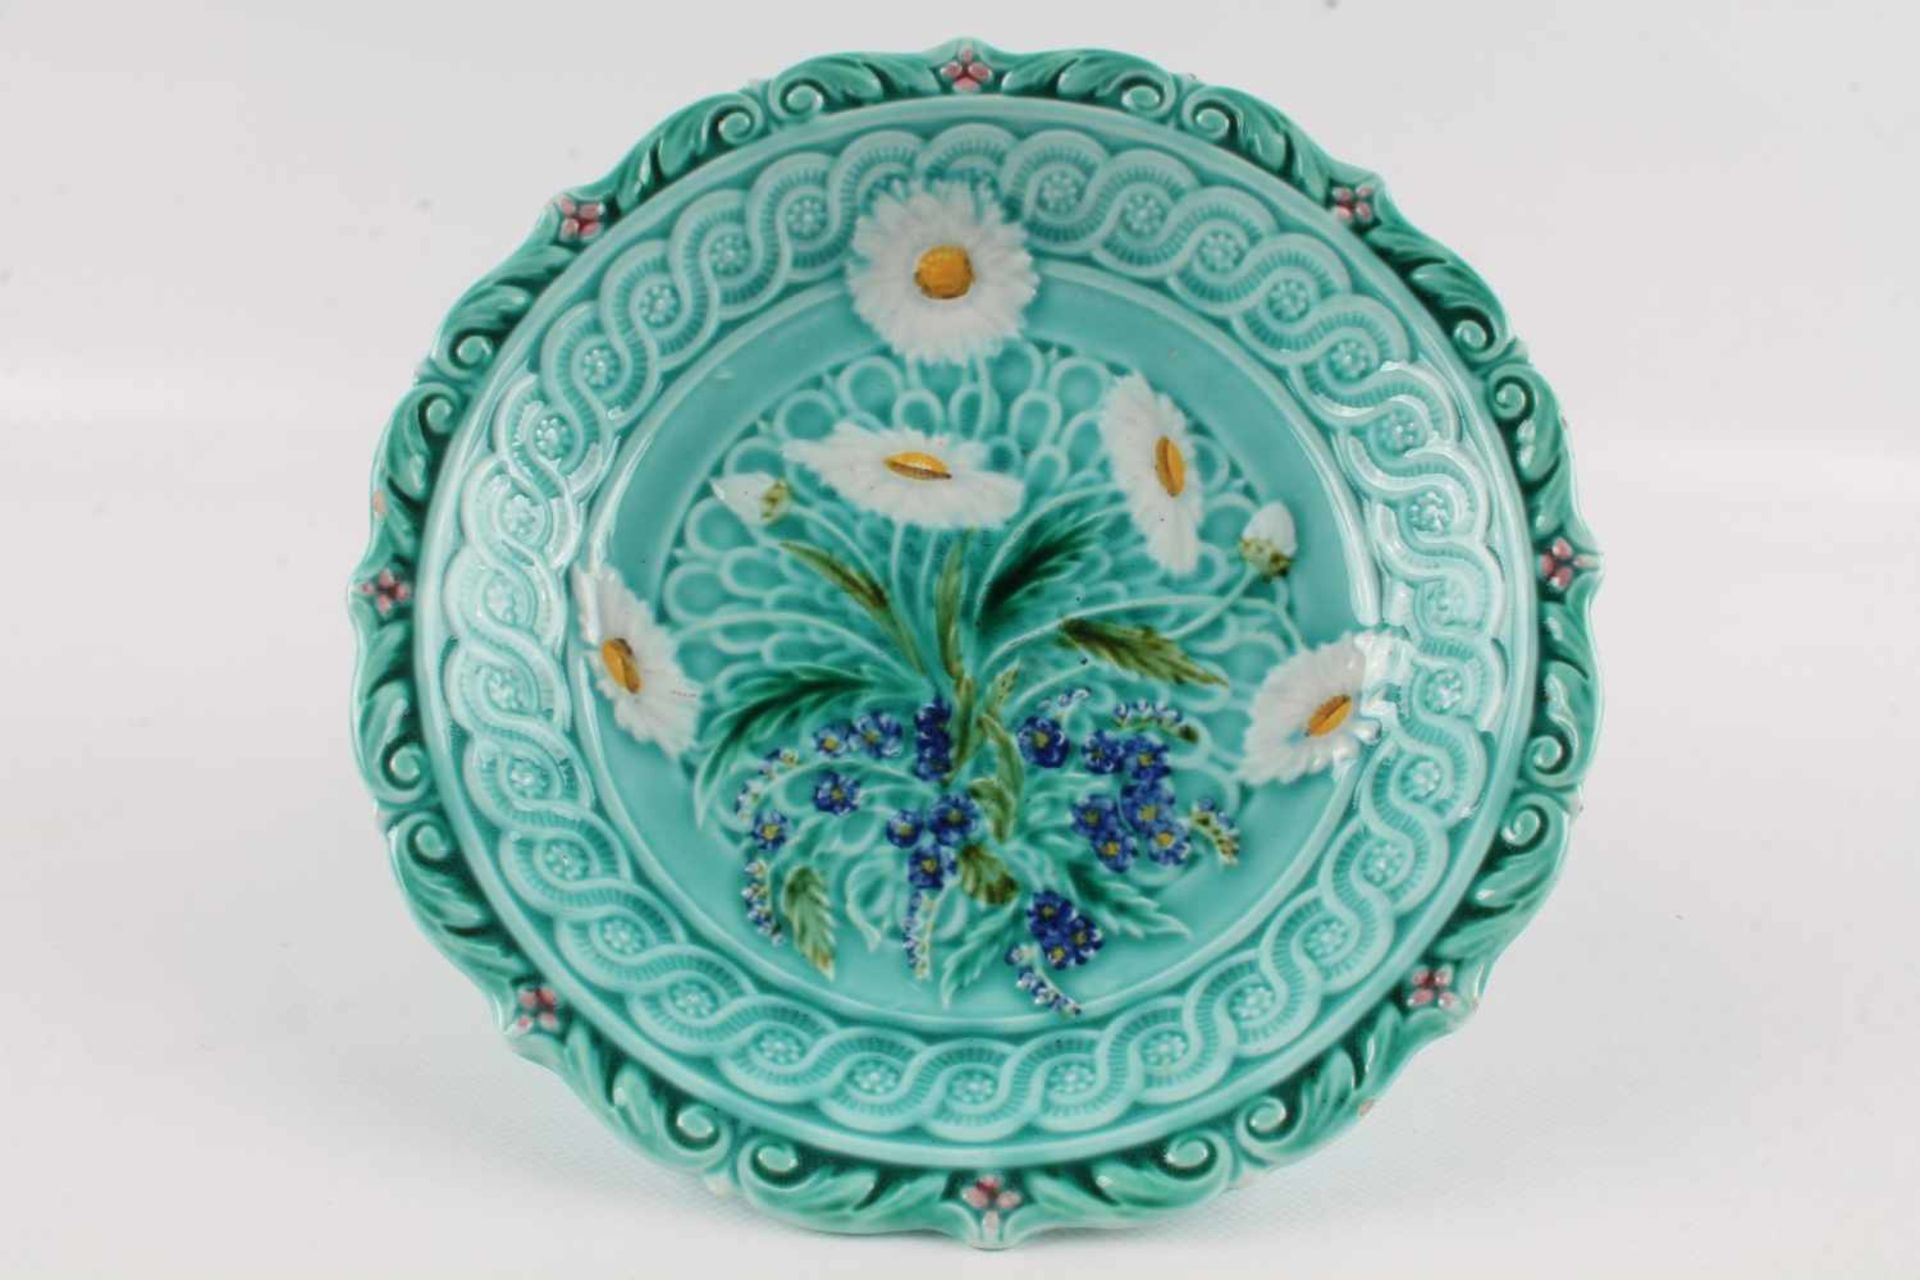 Villeroy & Boch Jugendstil Tafelaufsatz mit 5 Tellern, art nouveau bowl with 5 plates, - Bild 5 aus 6